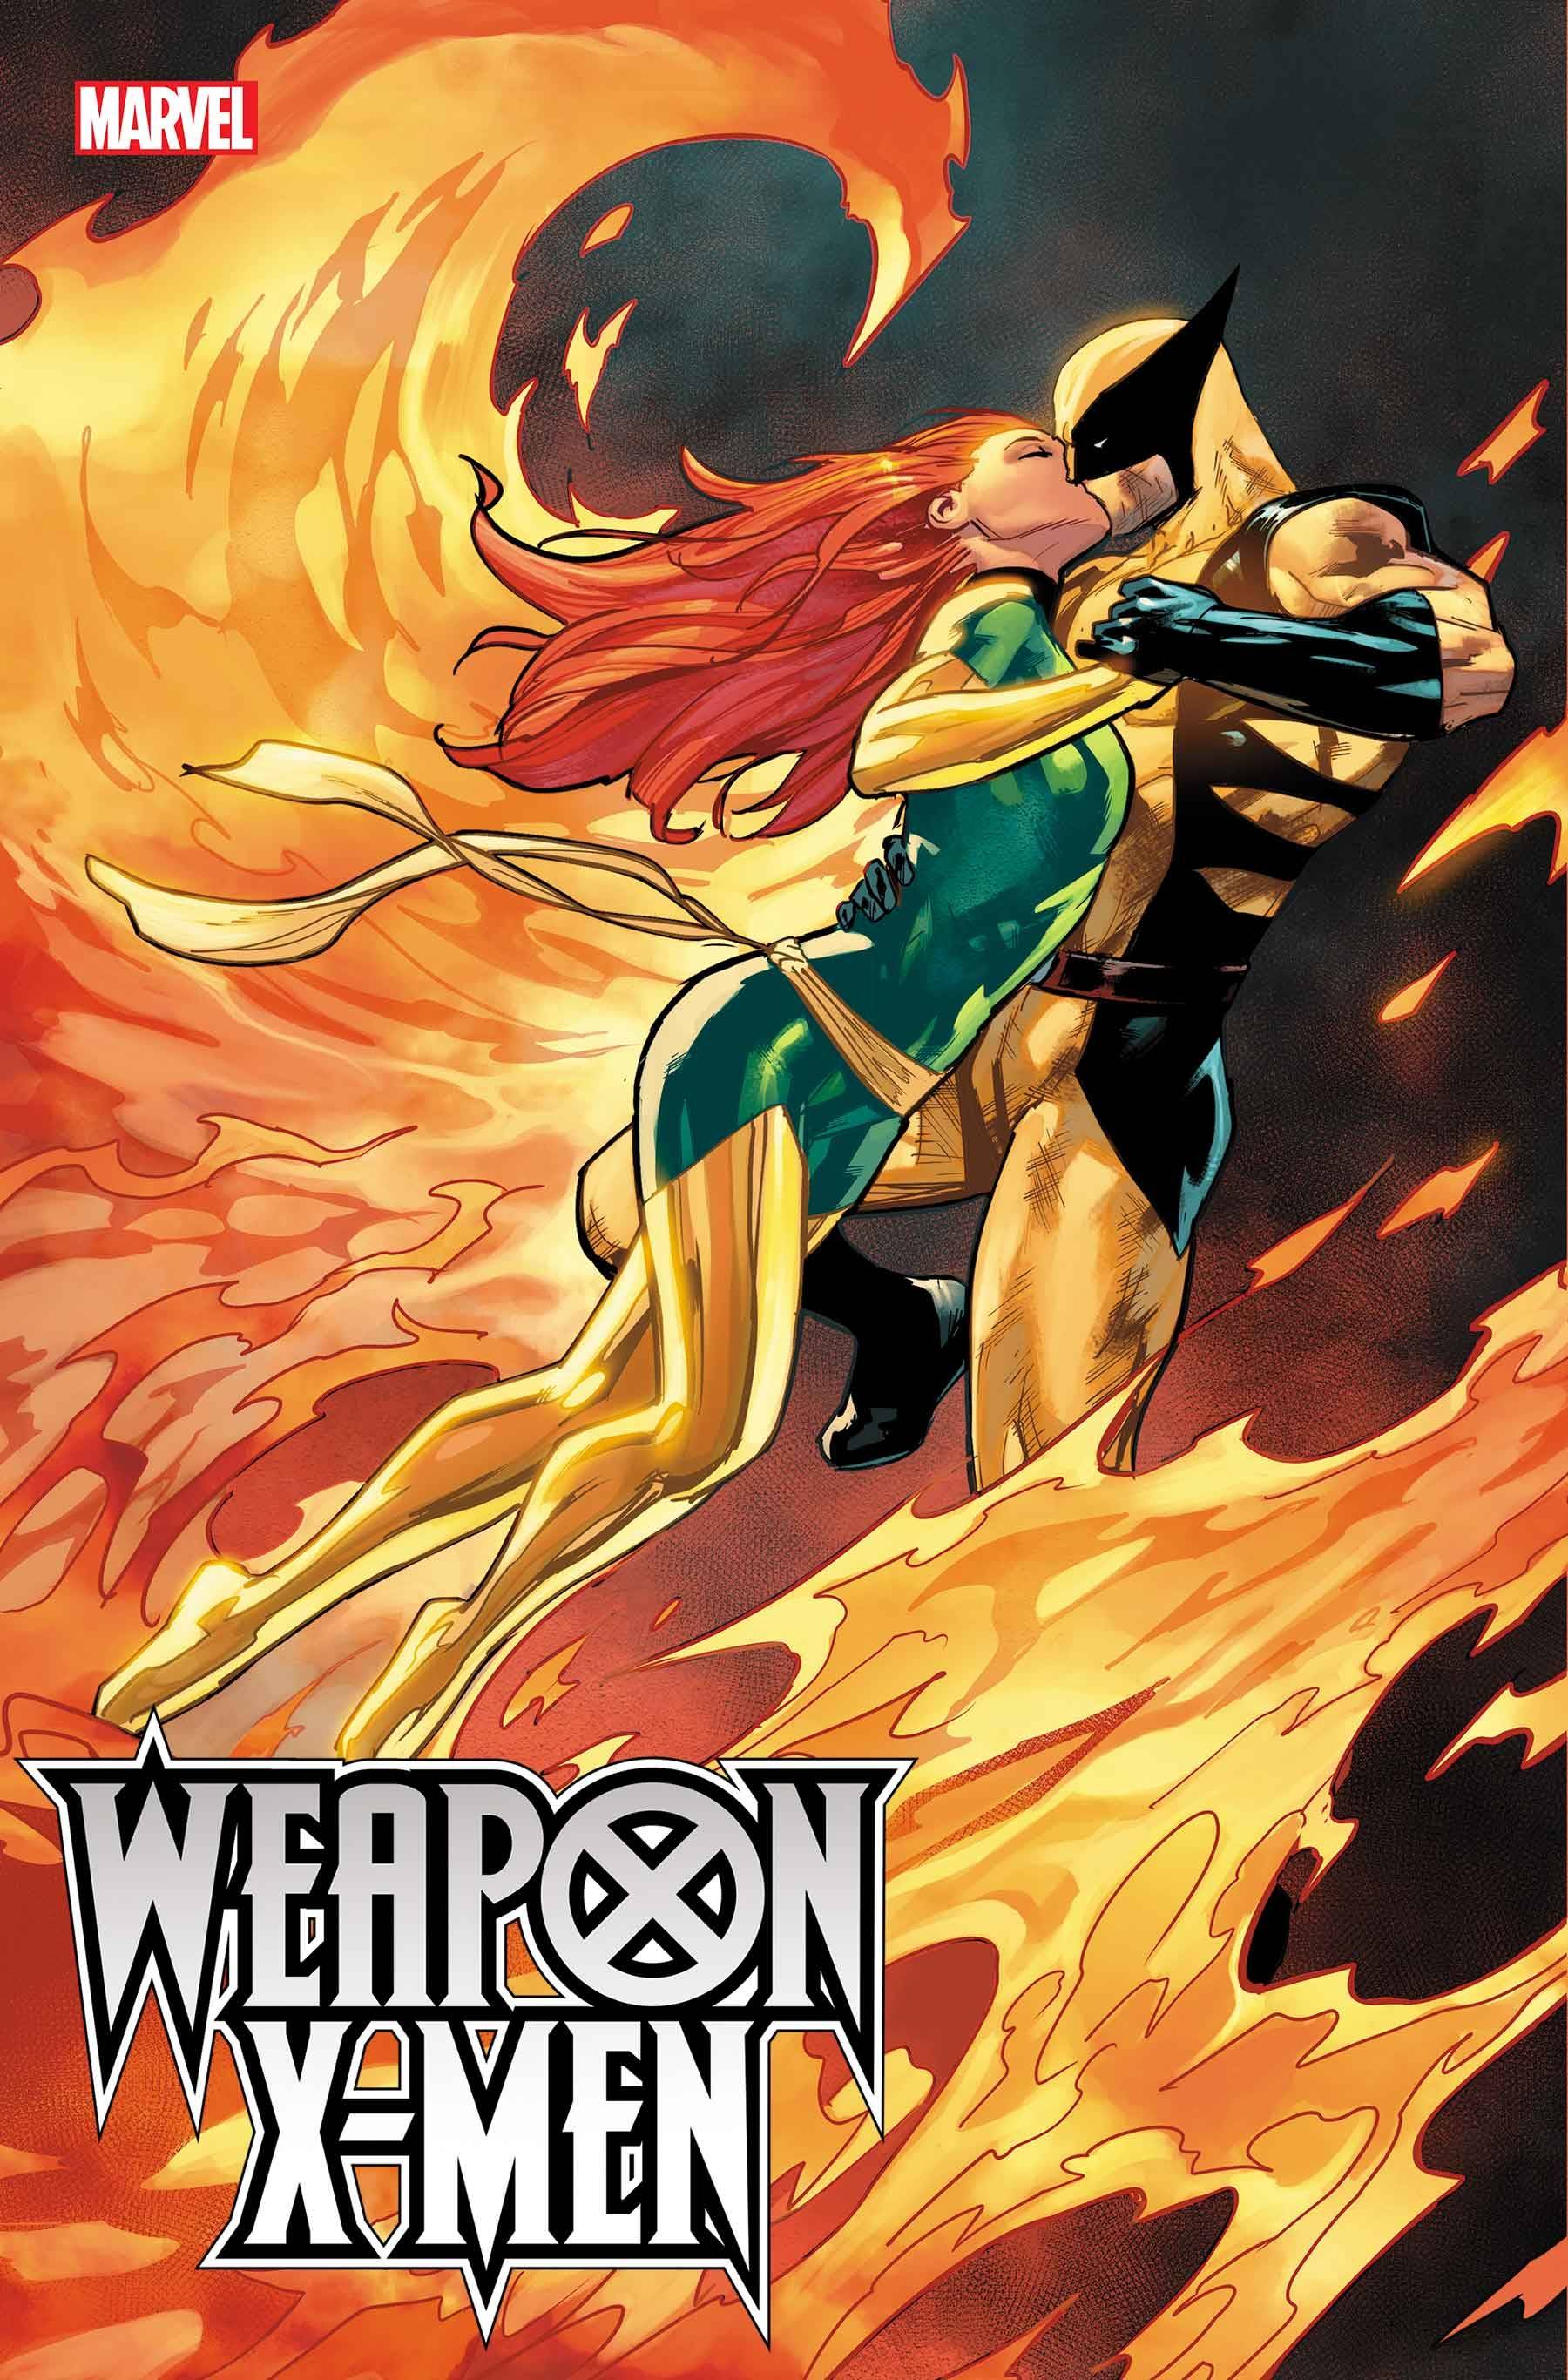 WEAPON X-MEN -- Default Image